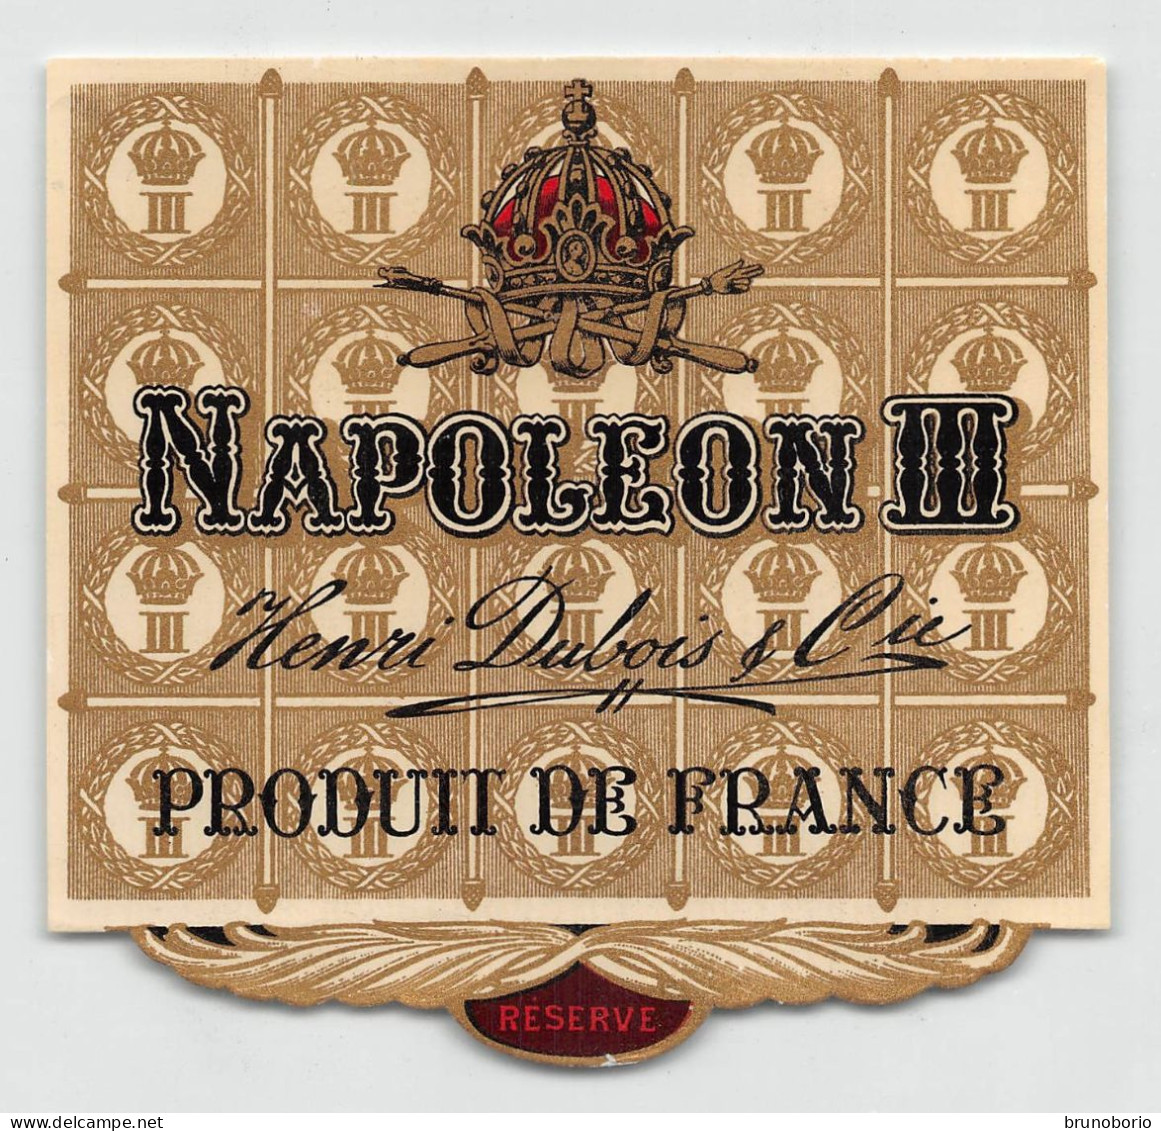 00049 "NAPOLEON III - ENRI DUBOIS & CIE - PRODUIT DE FRANCE" ETICH. ORIG. - Alcoholen & Sterke Drank